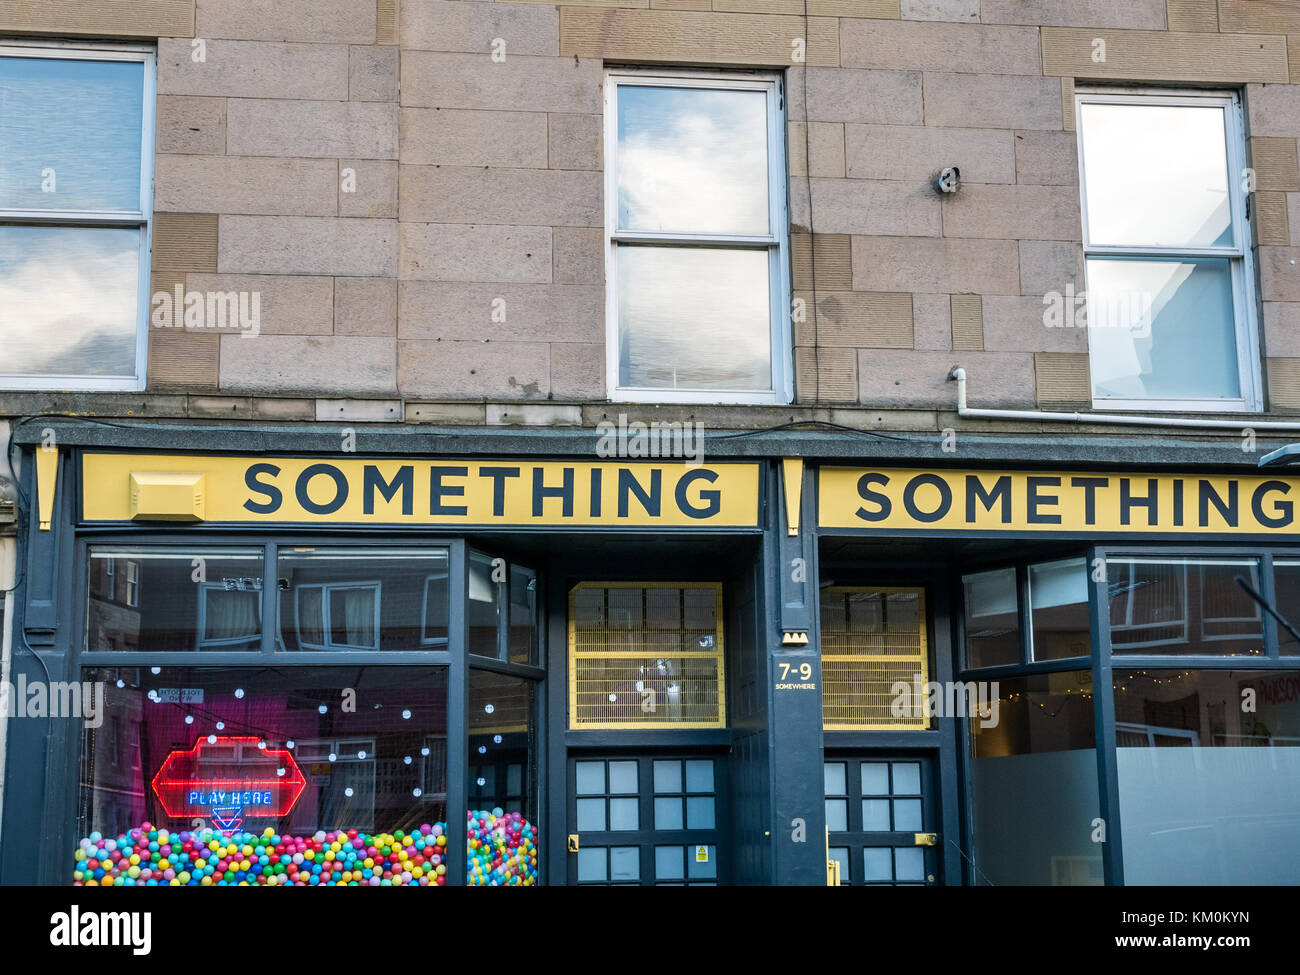 Avant d'affaires bizarres quelque chose quelque chose, agence de création et société de production, quelque part, Leith, Edinburgh, Ecosse, Royaume-Uni, avec des balles de couleur Banque D'Images